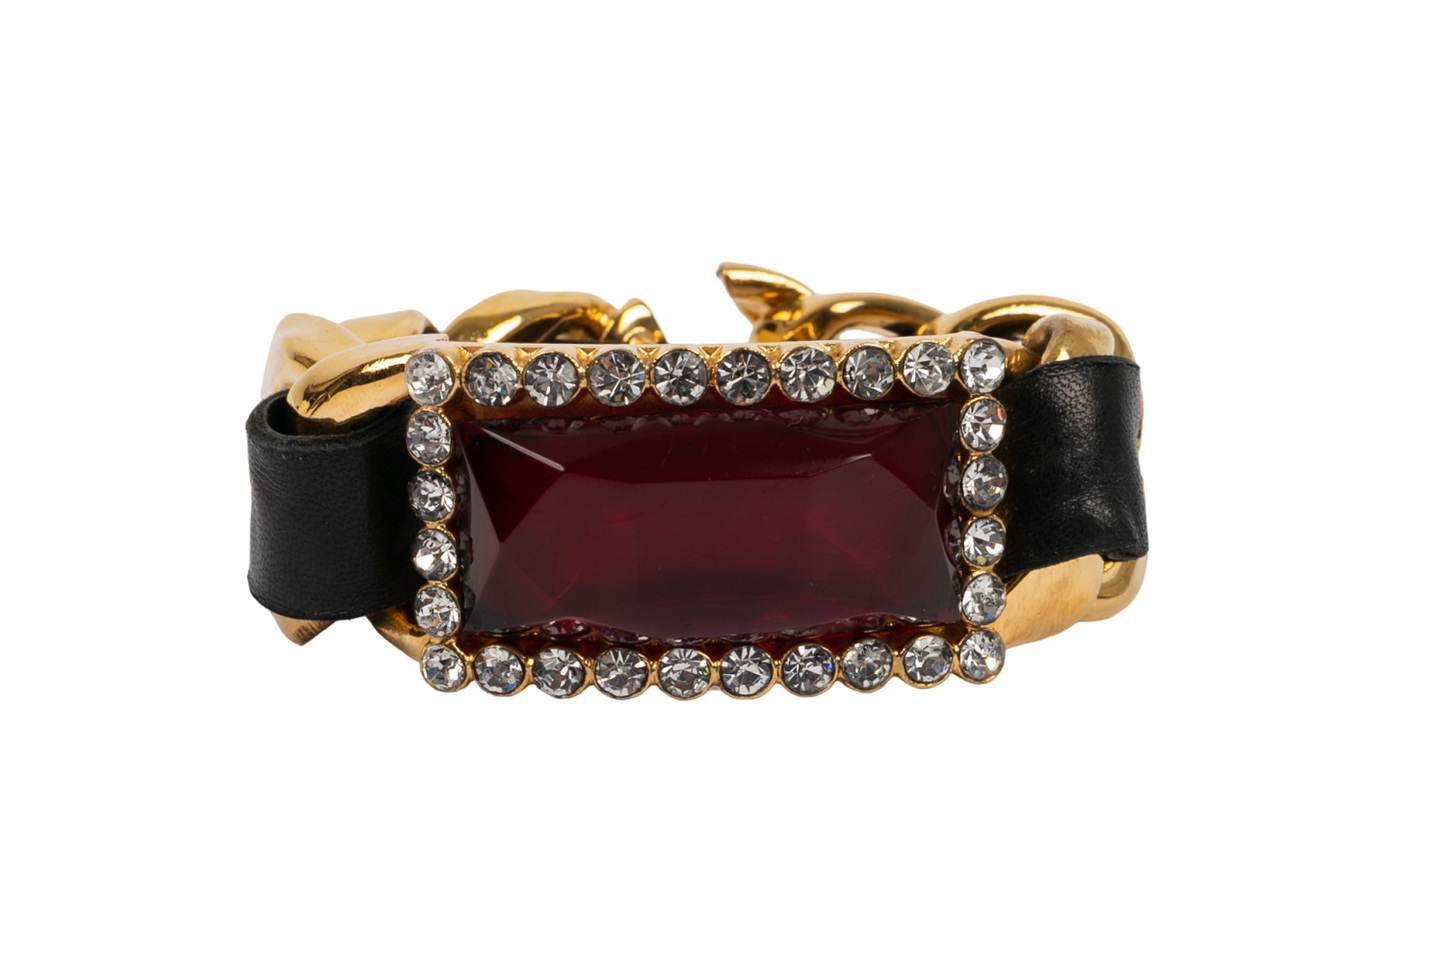 Bracelet en cuir Chanel